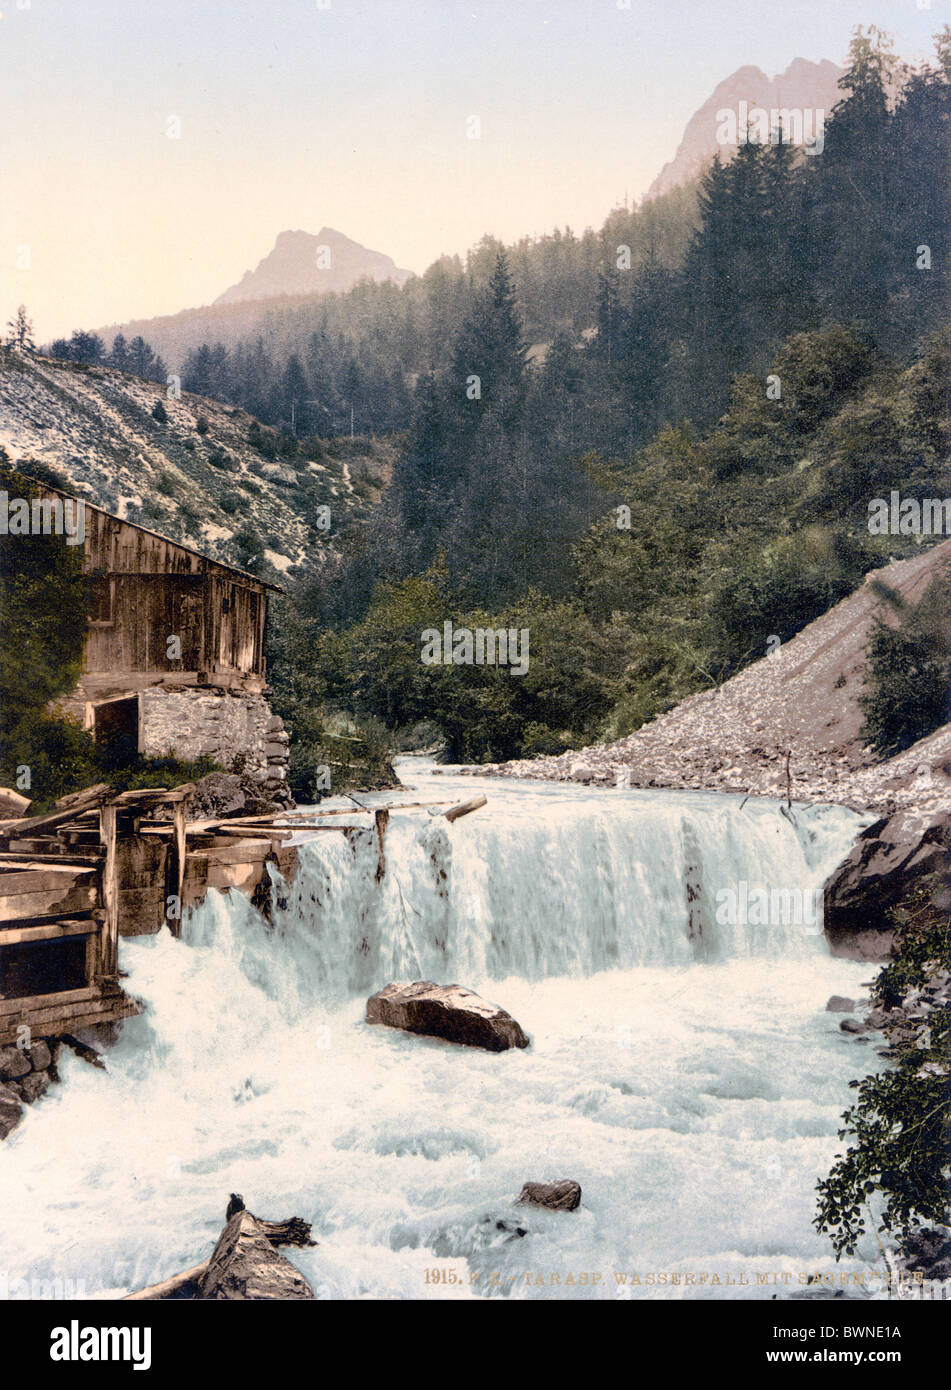 Schweiz Europa senken Engadin Tarasp Wasserfall Sägewerk Kanton Graubünden Graubünden Photochrom Geschichte hist Stockfoto